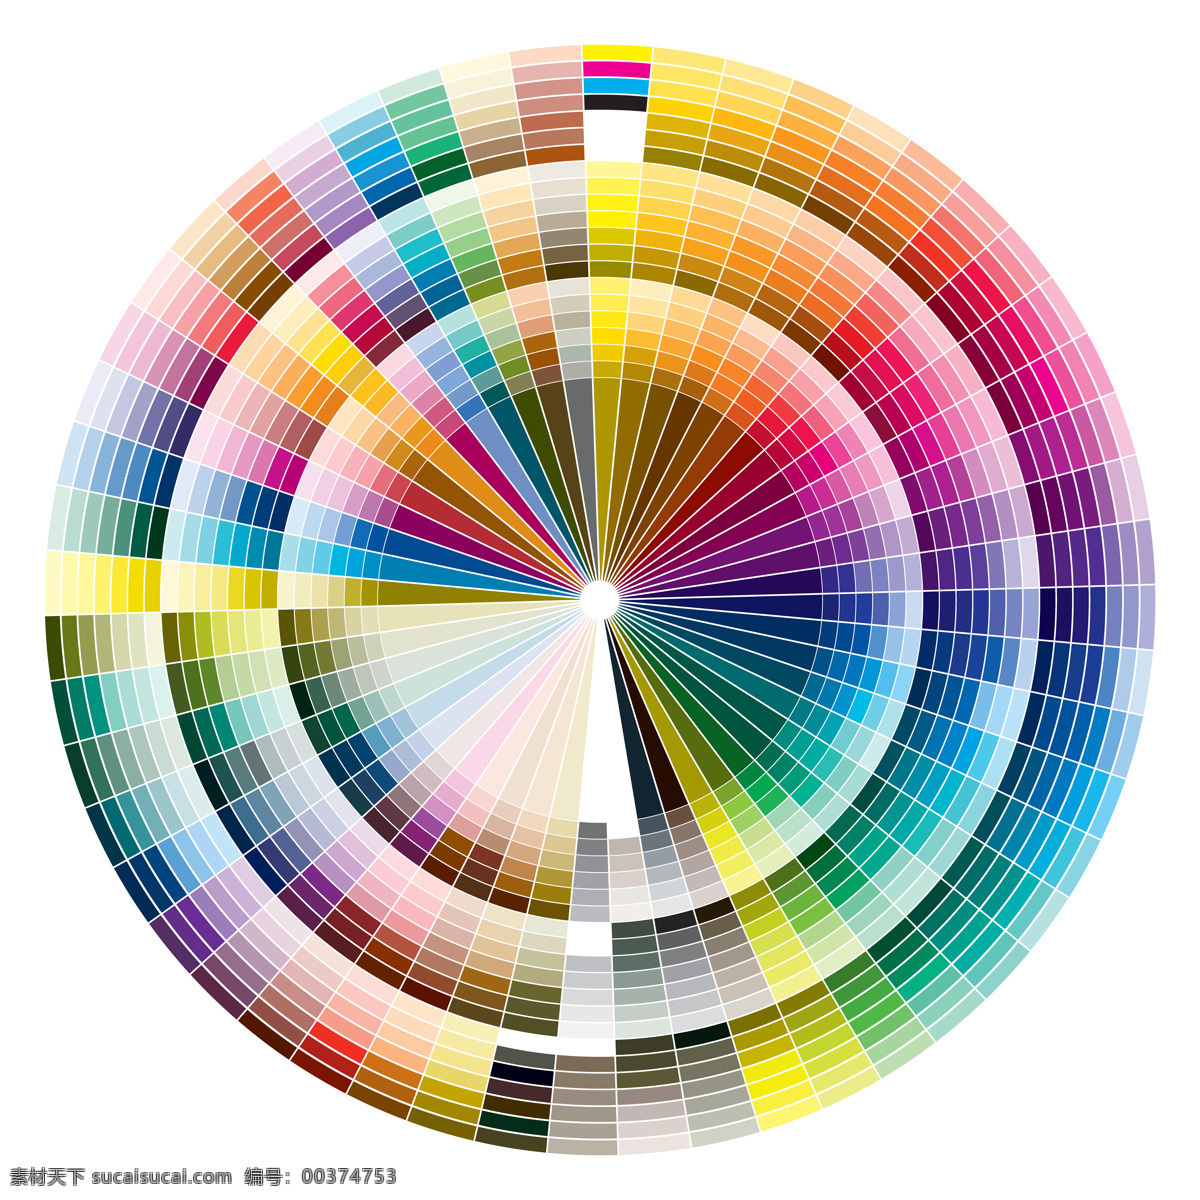 色彩 模式 颜料 圆形 颜色 色块 其他类别 生活百科 白色